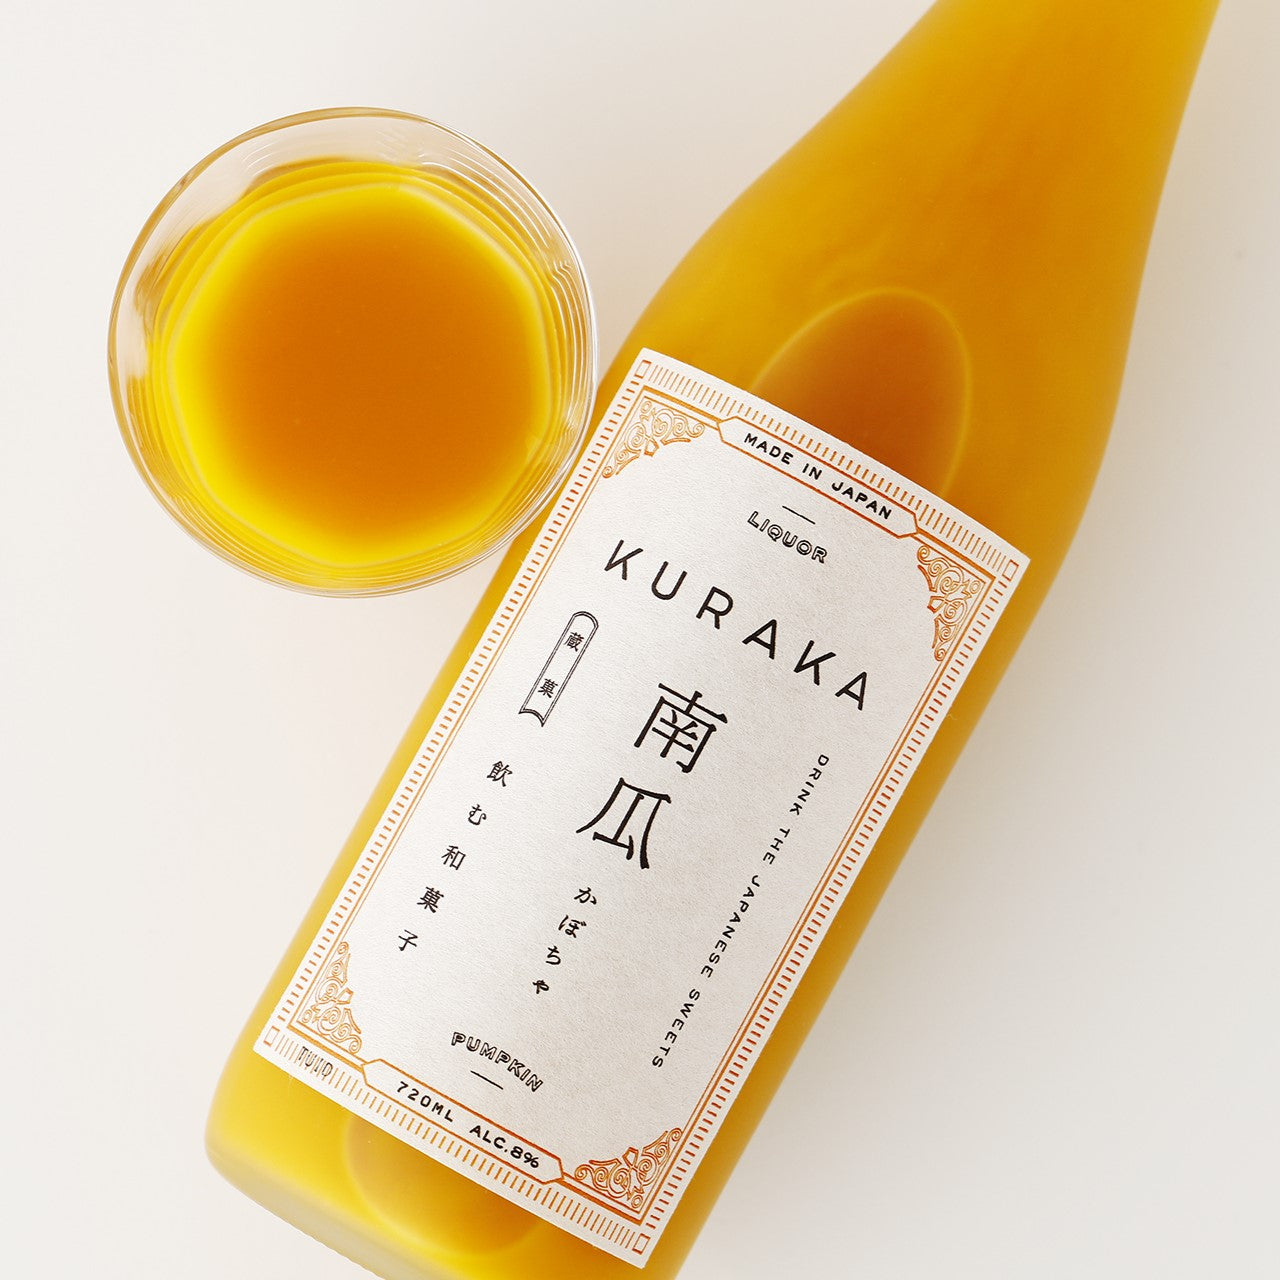 KURAKA -蔵菓- 南瓜